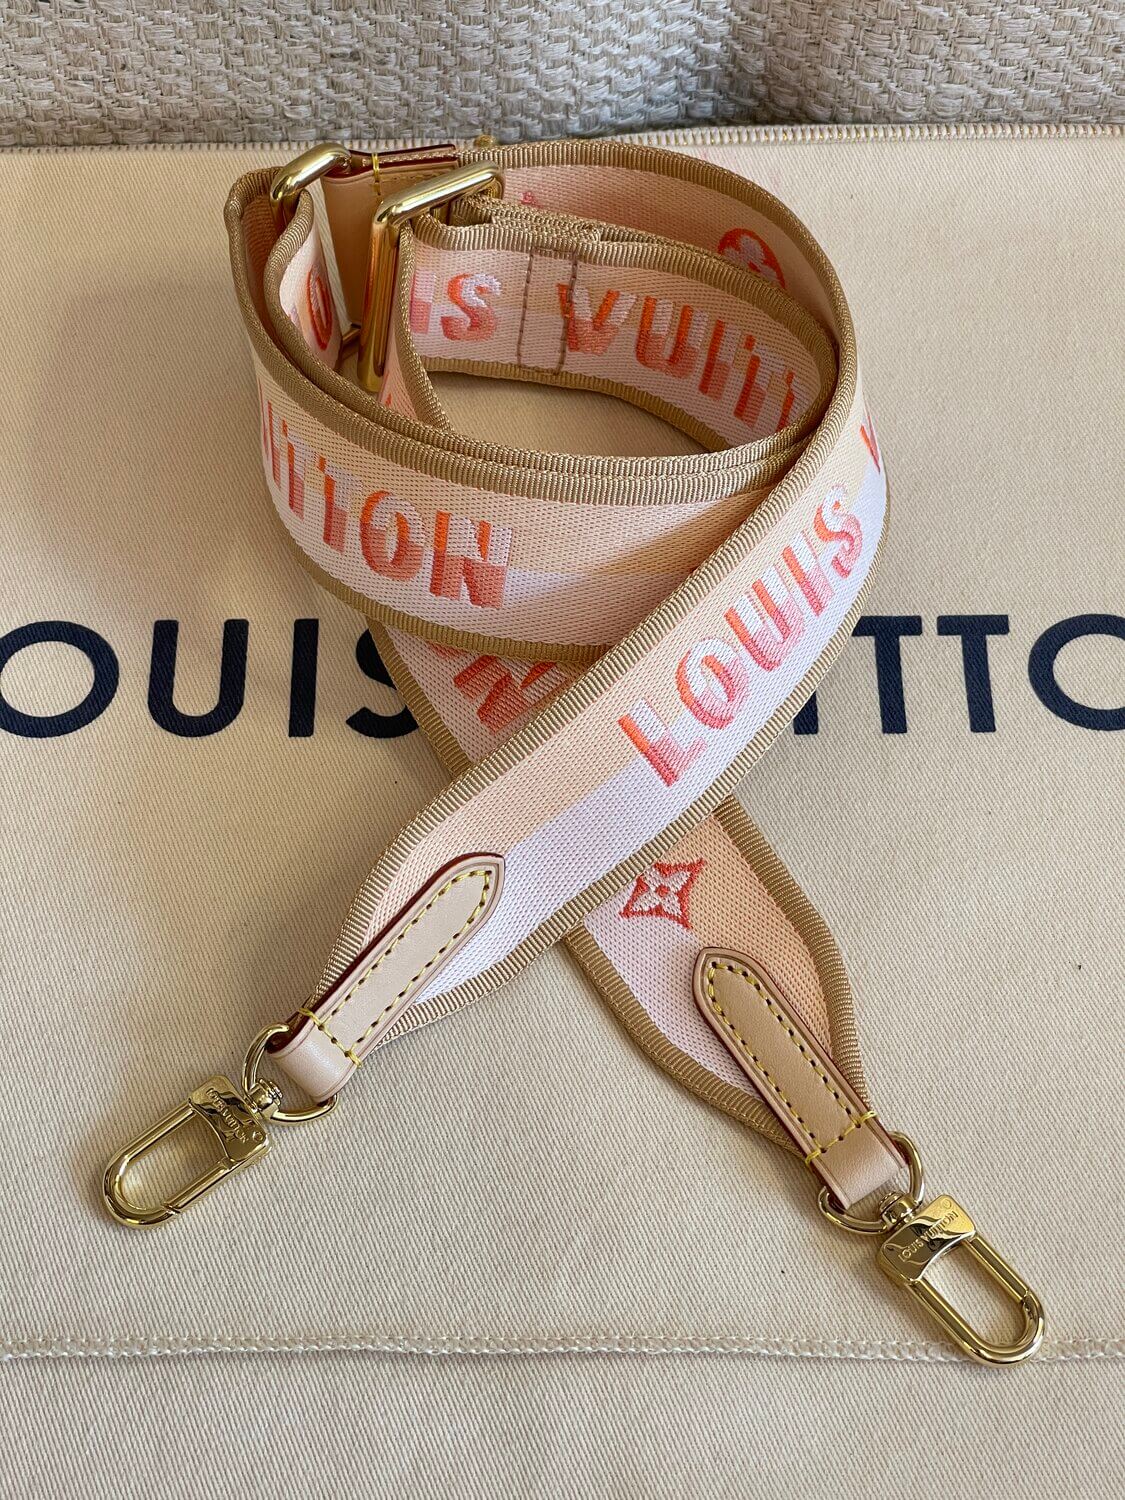 Lot - LOUIS VUITTON POCHETTE en toile Monogram Mini rouge et cuir,  garnitures en laiton doré, sangle amovible 8,5 x 12,5 x 3,5 cmR -  Catalog# 701784 Chanel private collection & Luxury Accessories Online